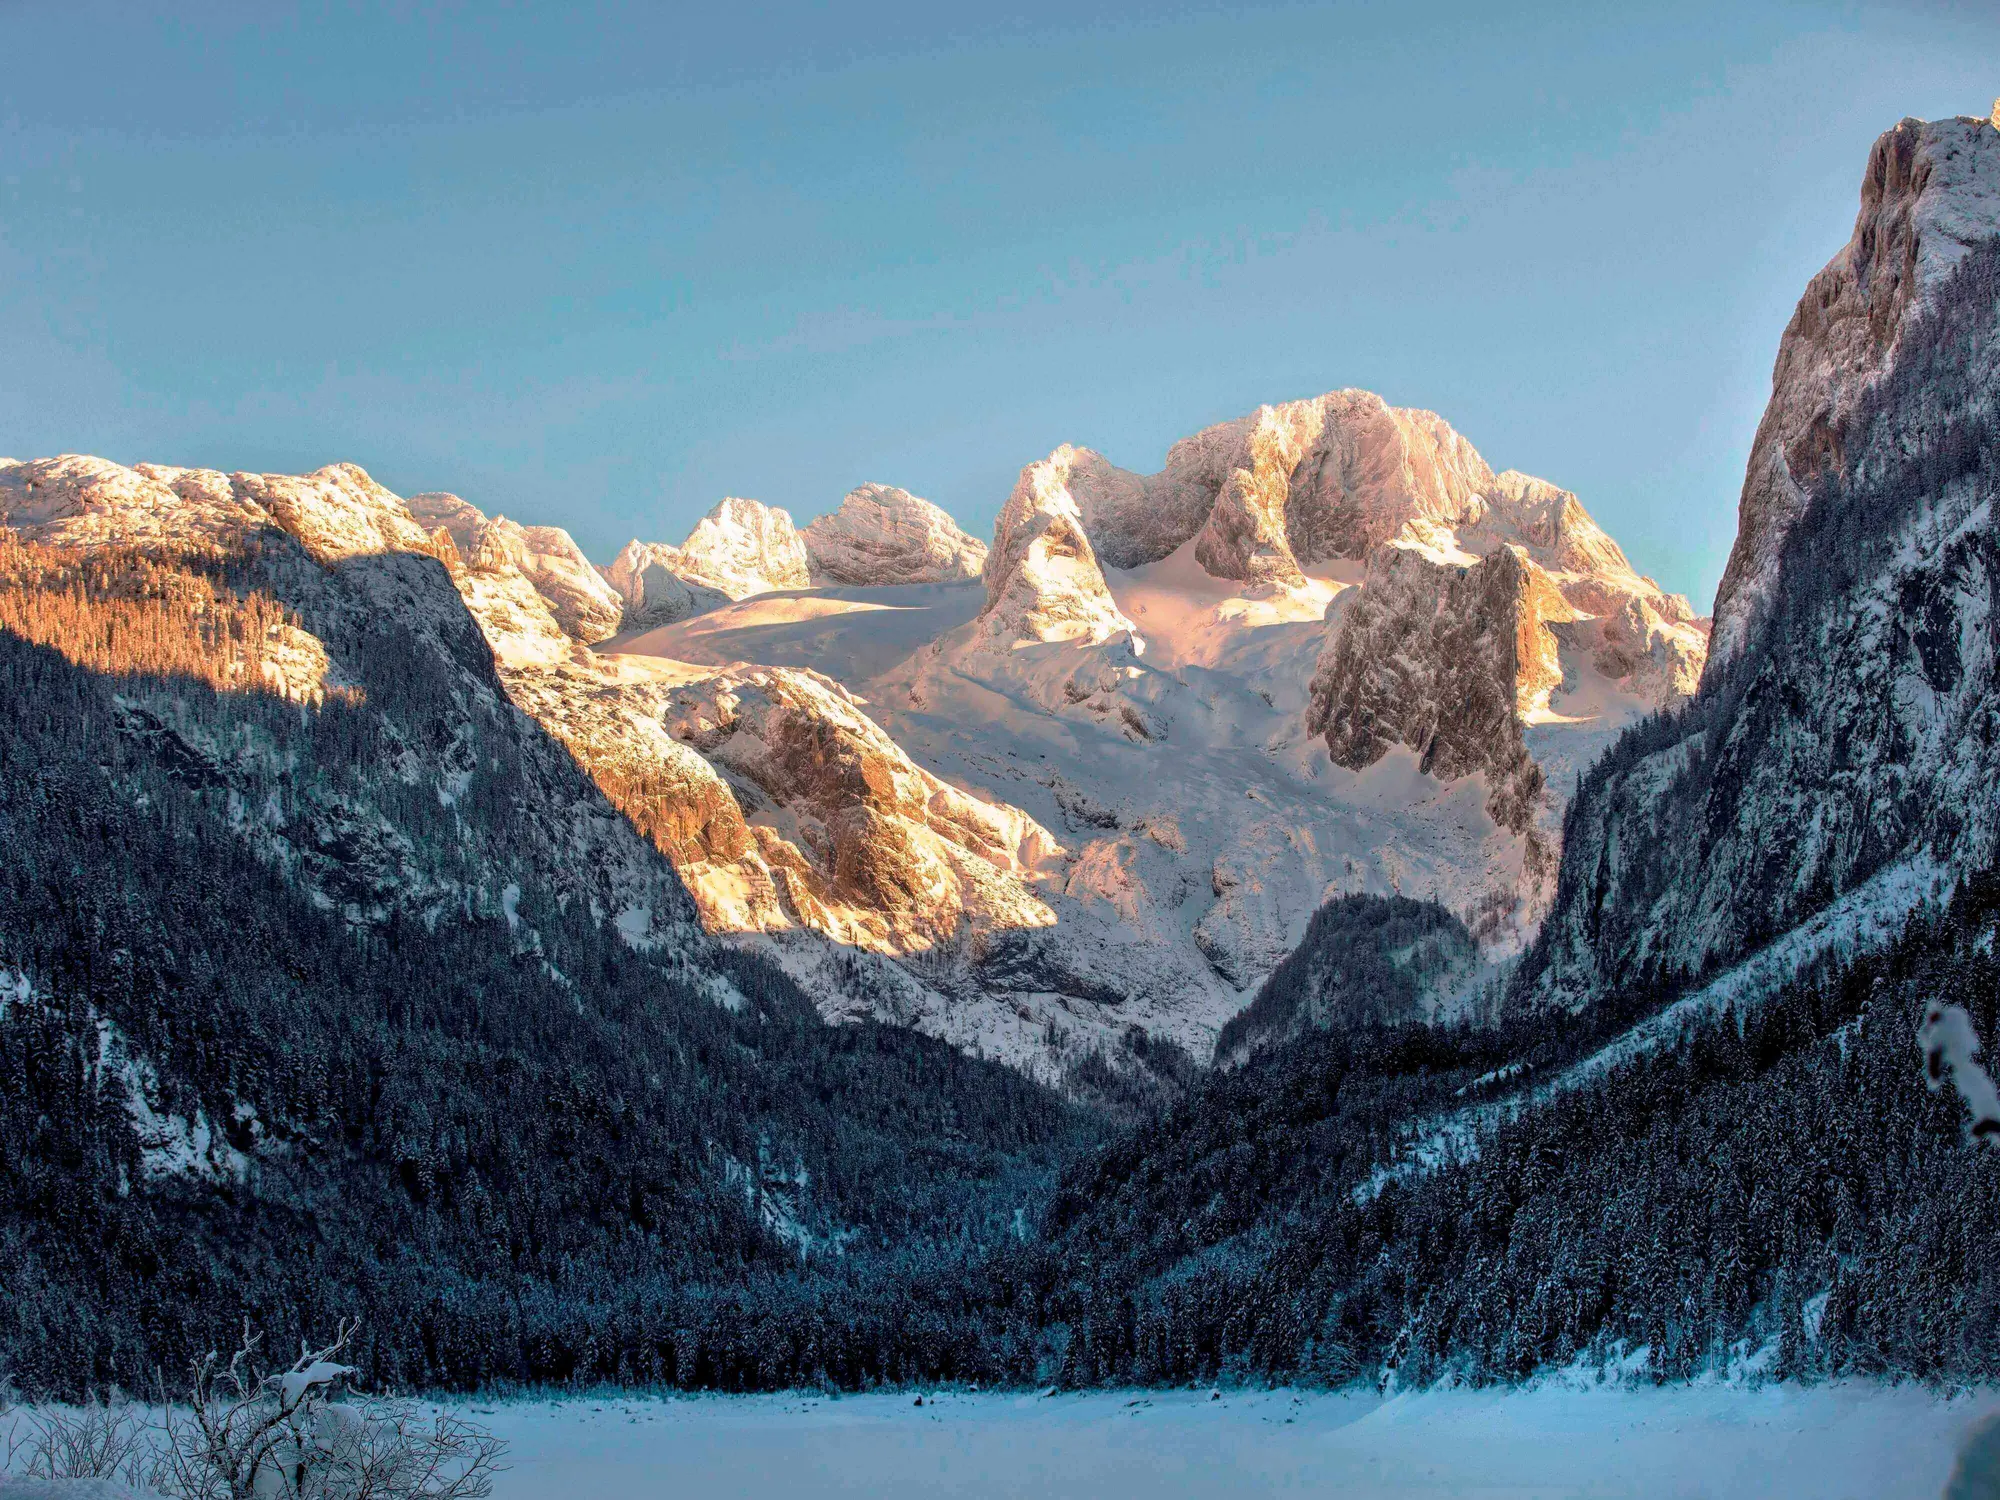 Vorderer Gosausee im Winter mit dem Dachsteingletscher im Hintergrund (c) Foto Österreich Werbung / Harald Eisenberger